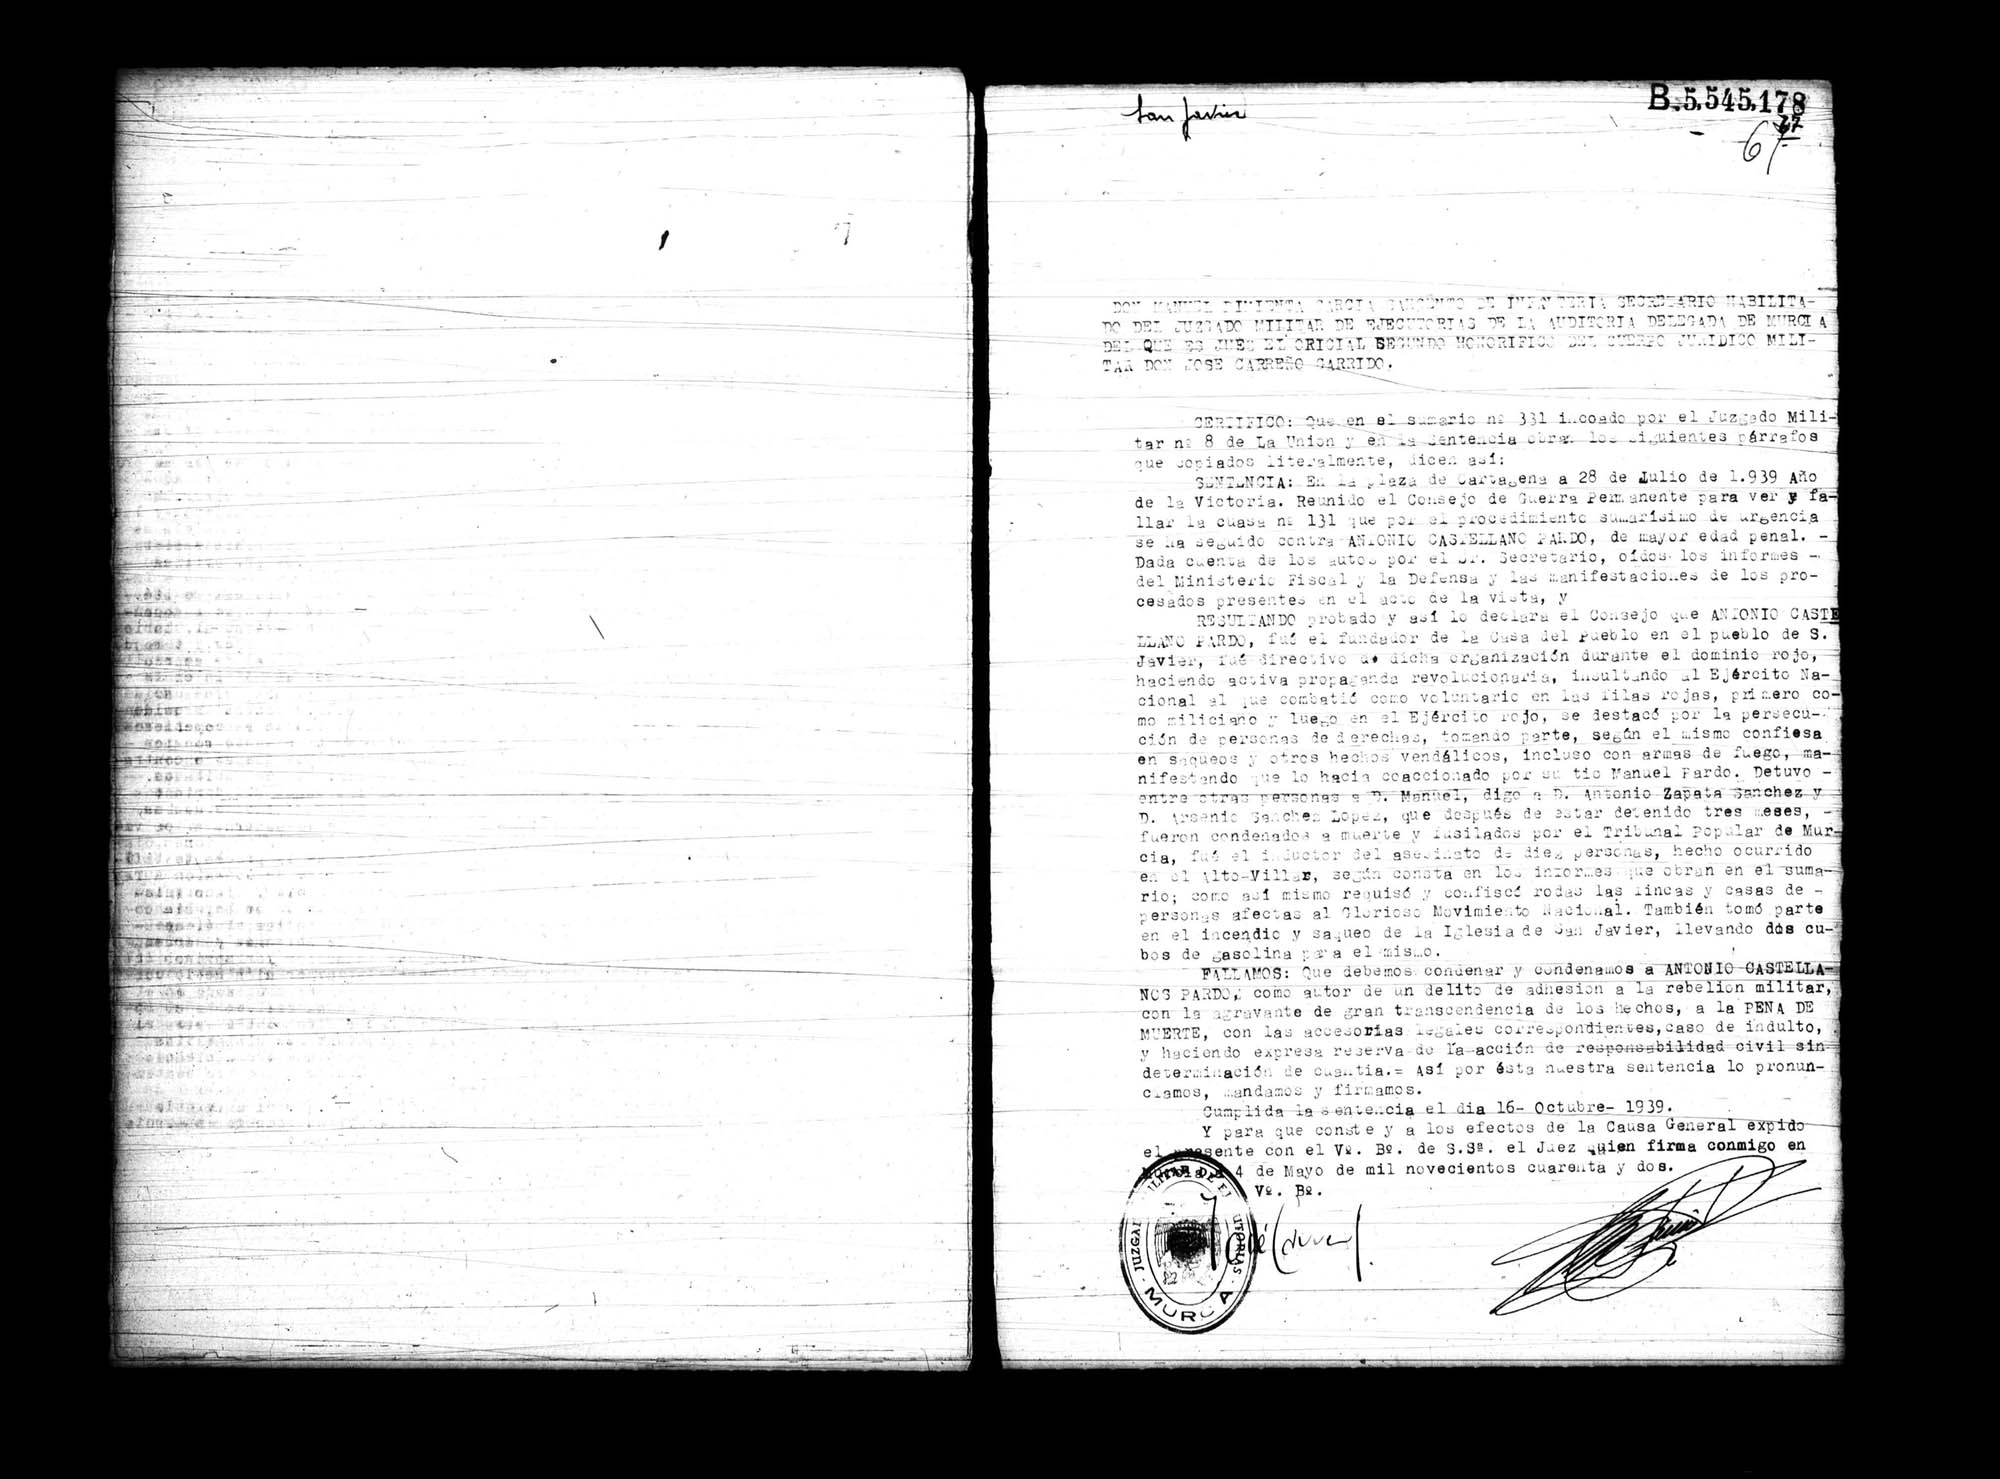 Certificado de la sentencia pronunciada contra Antonio Castellano Pardo, causa 331, el 28 de julio de 1939 en Cartagena.